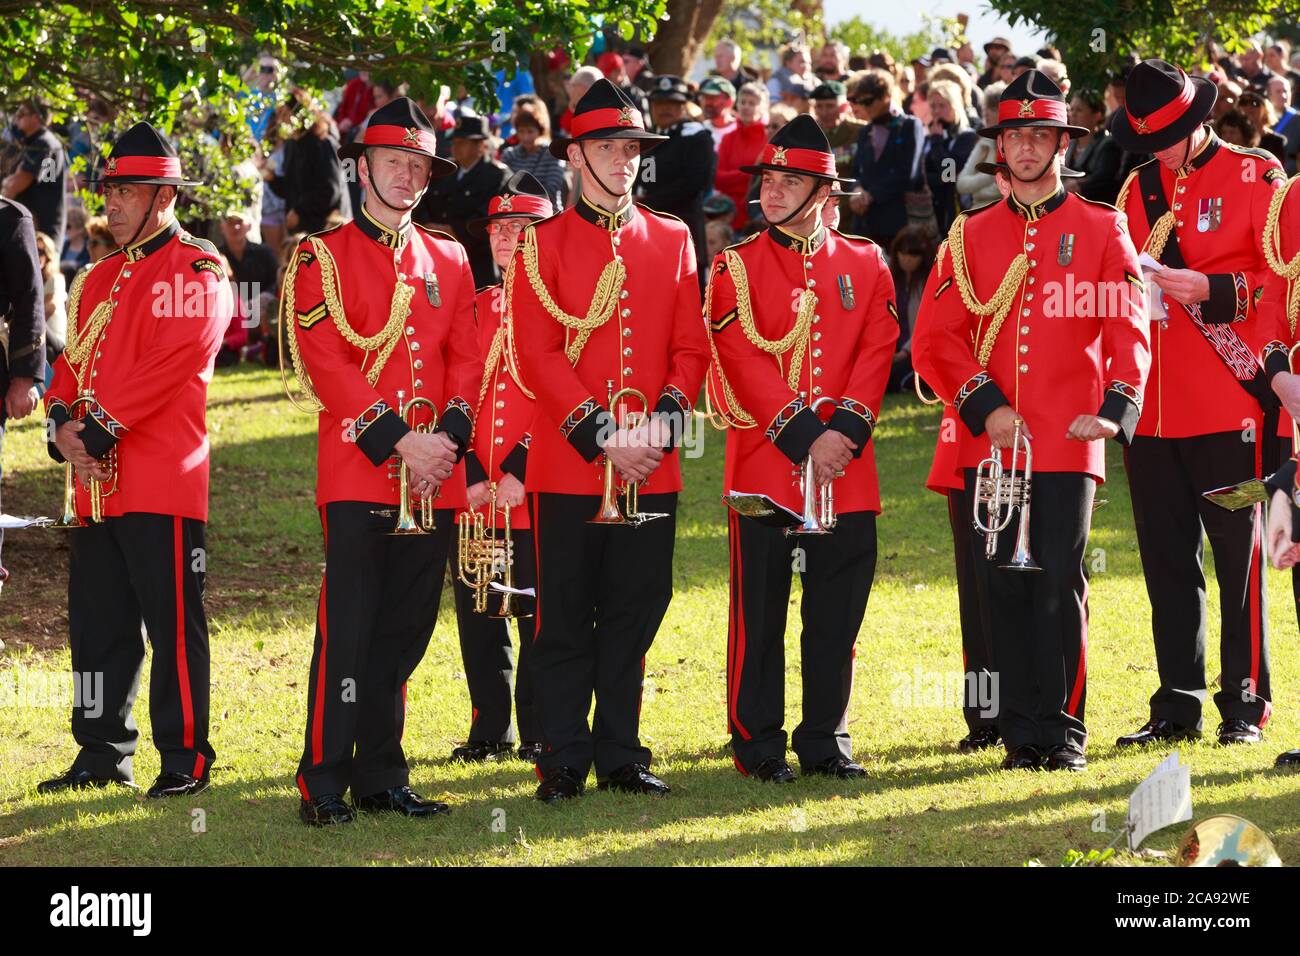 La sección de trompeta de la banda del Ejército de Nueva Zelanda con uniformes rojos ceremoniales en el 150 aniversario de la Batalla de la Puerta Pa. Tauranga, NZ, 4/29/2014 Foto de stock